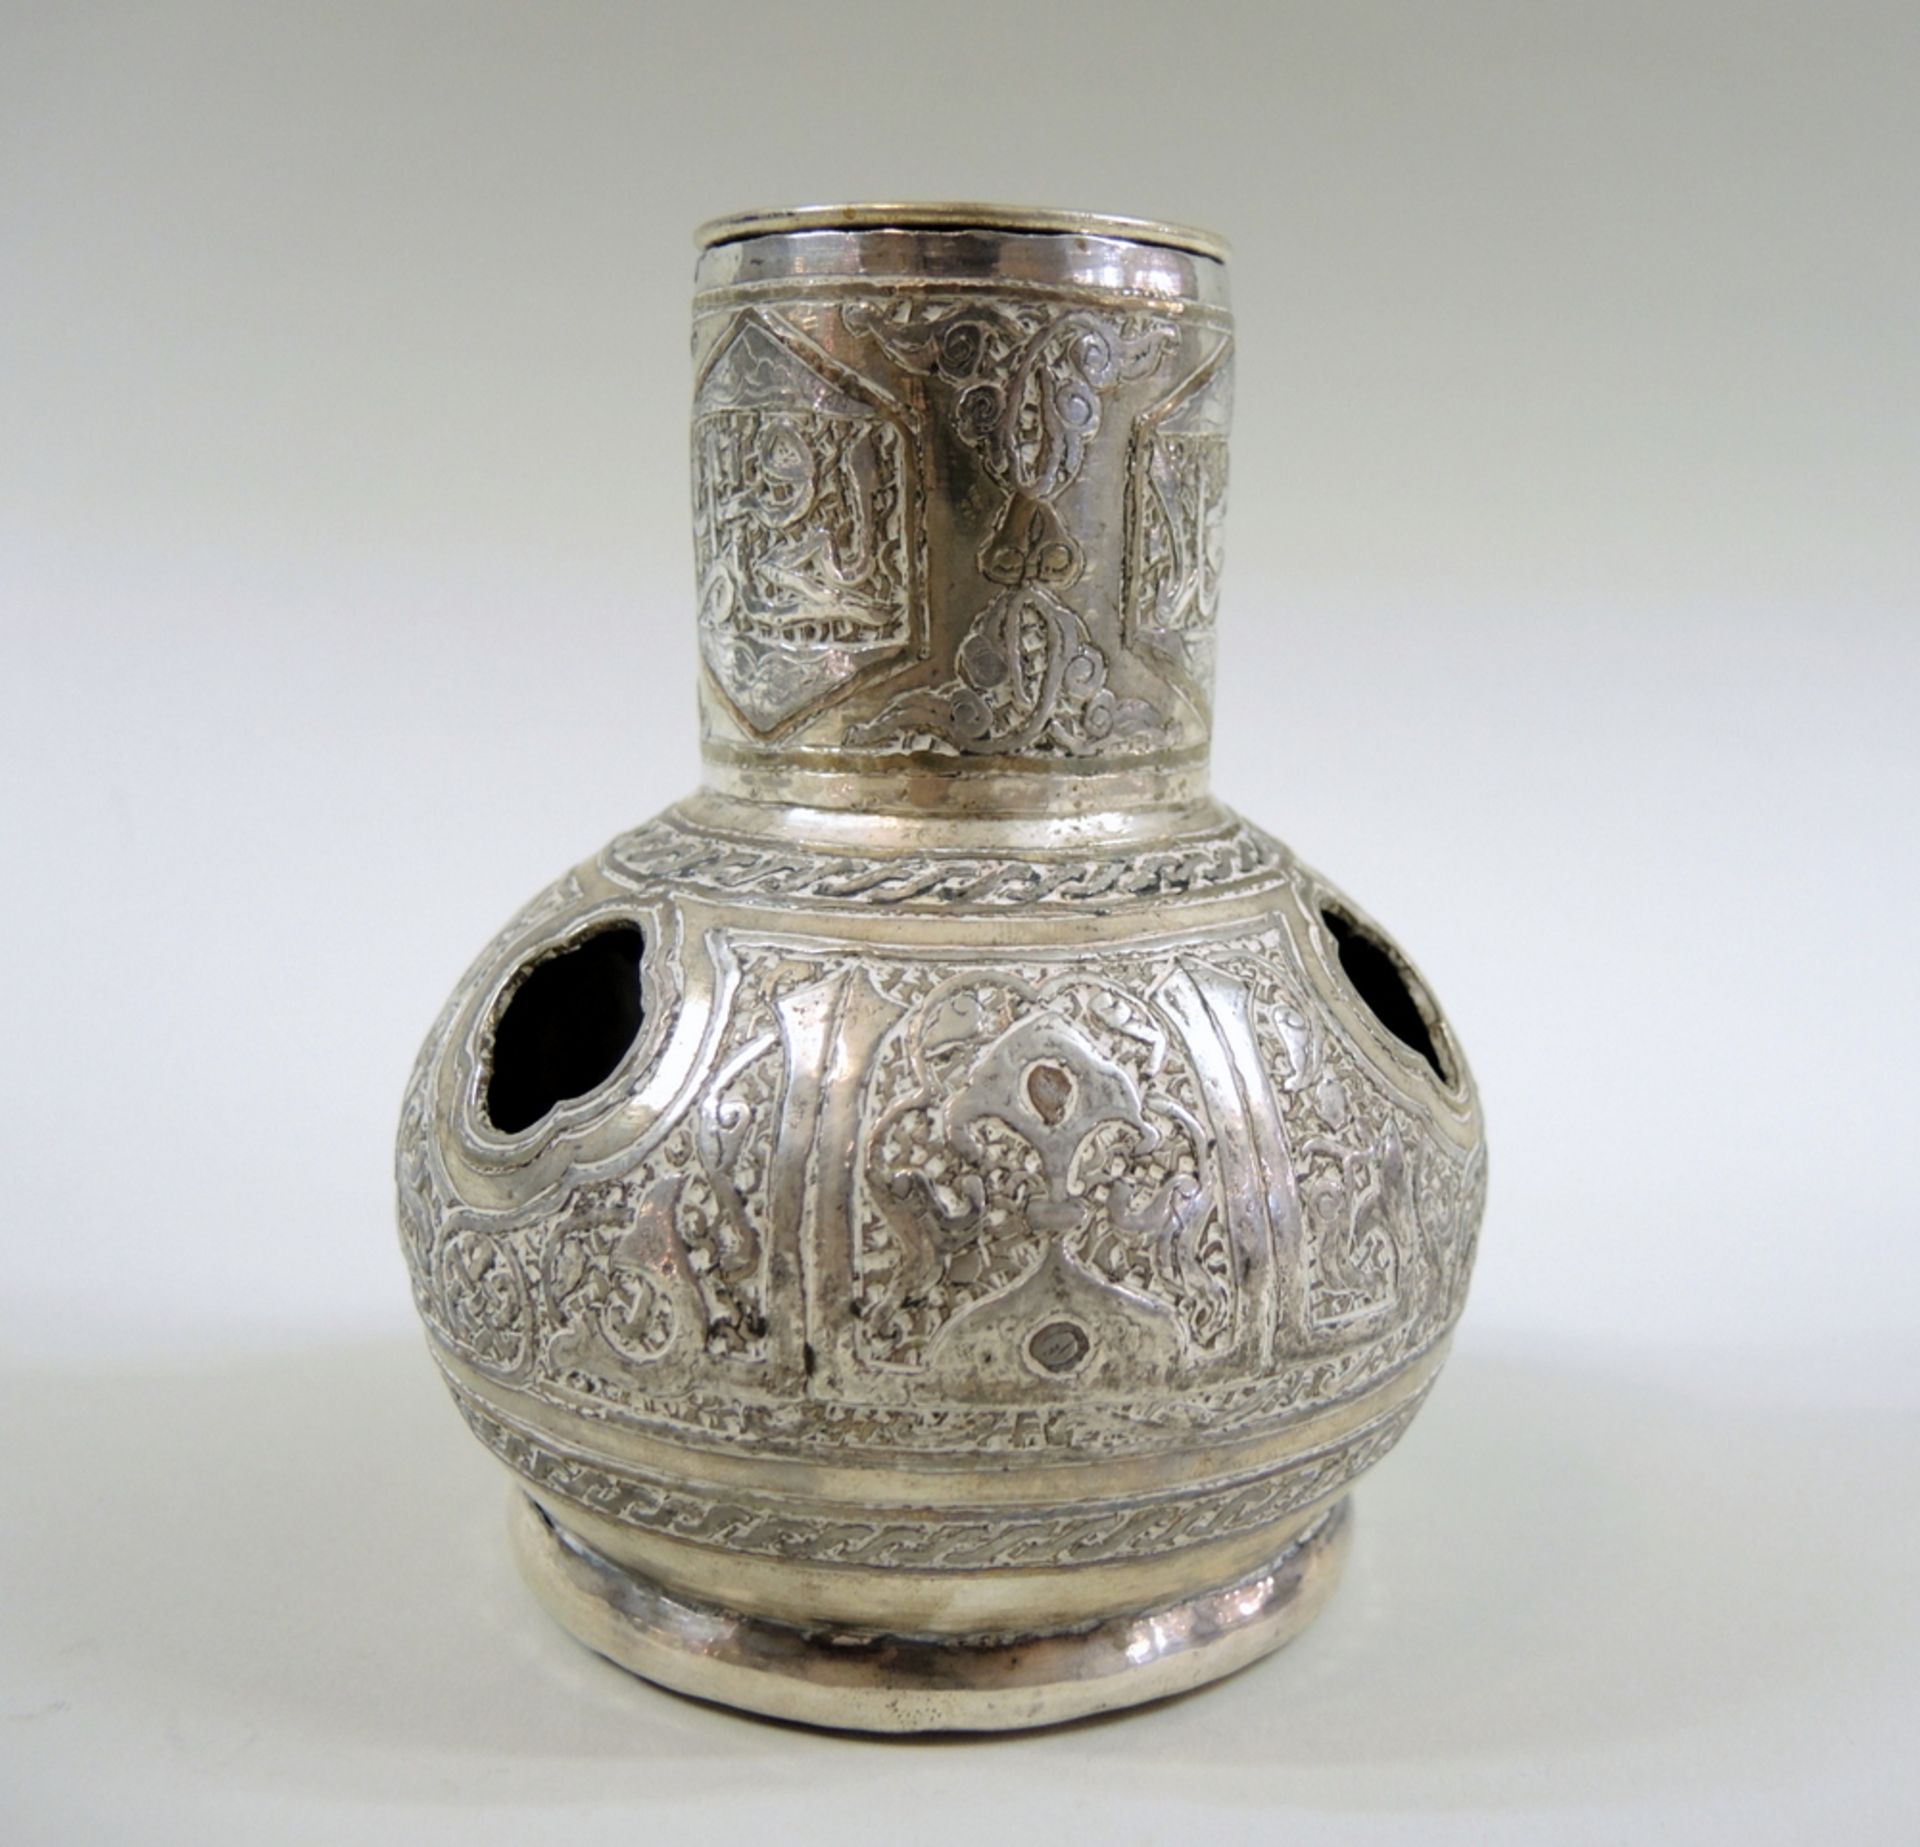 Osmanische SilberarbeitOsmanische Silberarbeit mit Einsatz, wohl Räuchergefäß, Silber, kugeliger